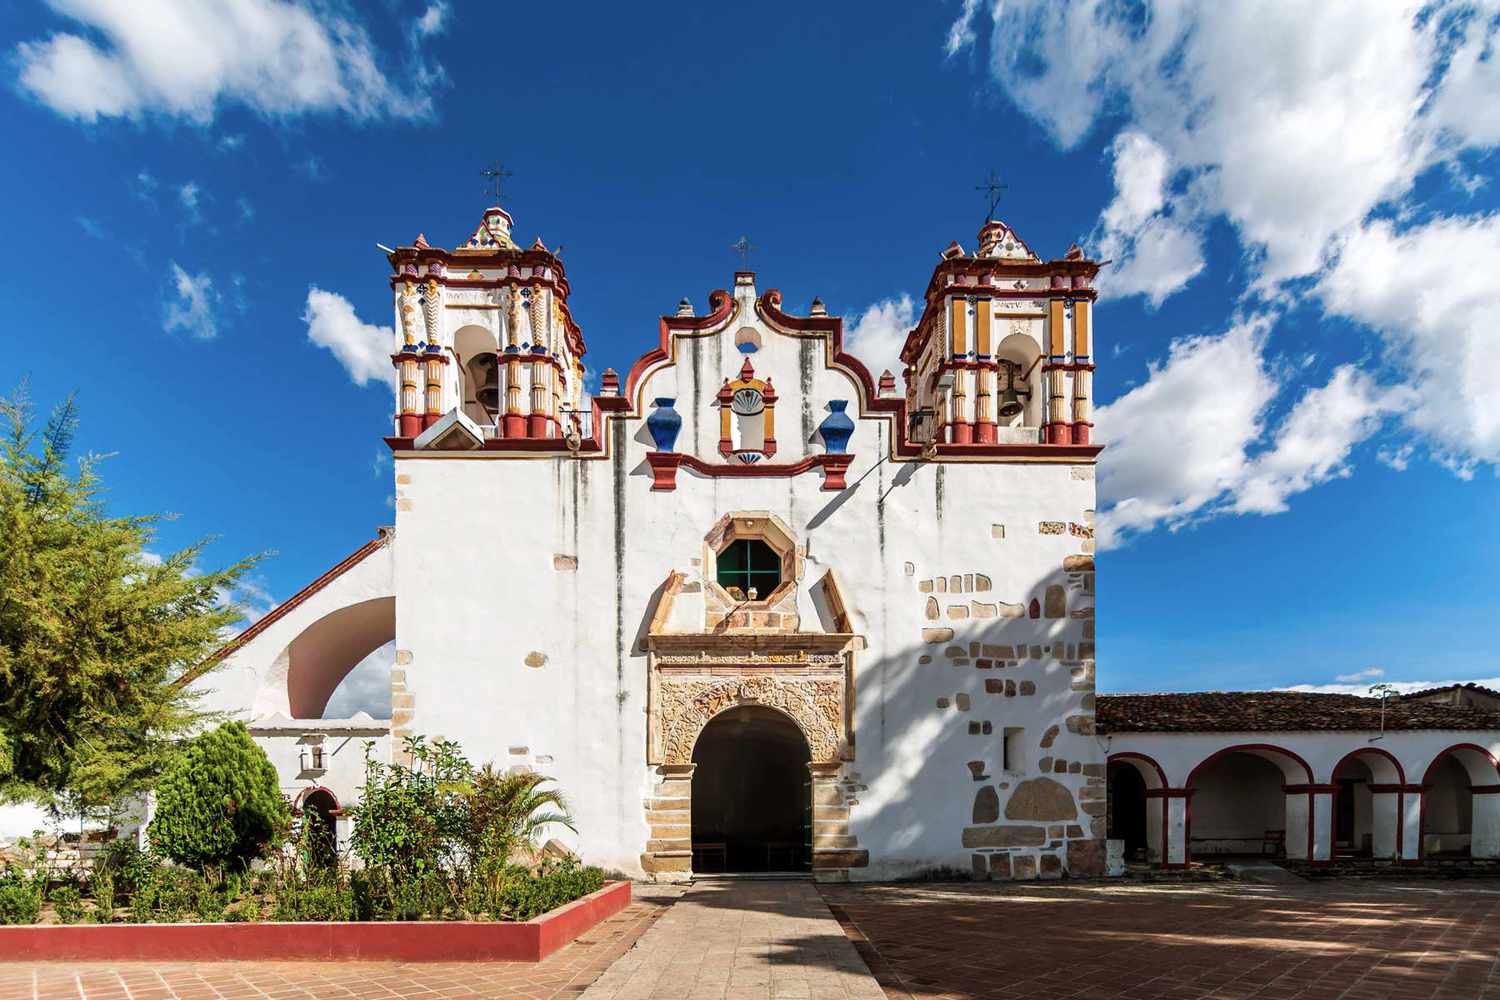 Une église coloniale espagnole à Oaxaca, Mexique